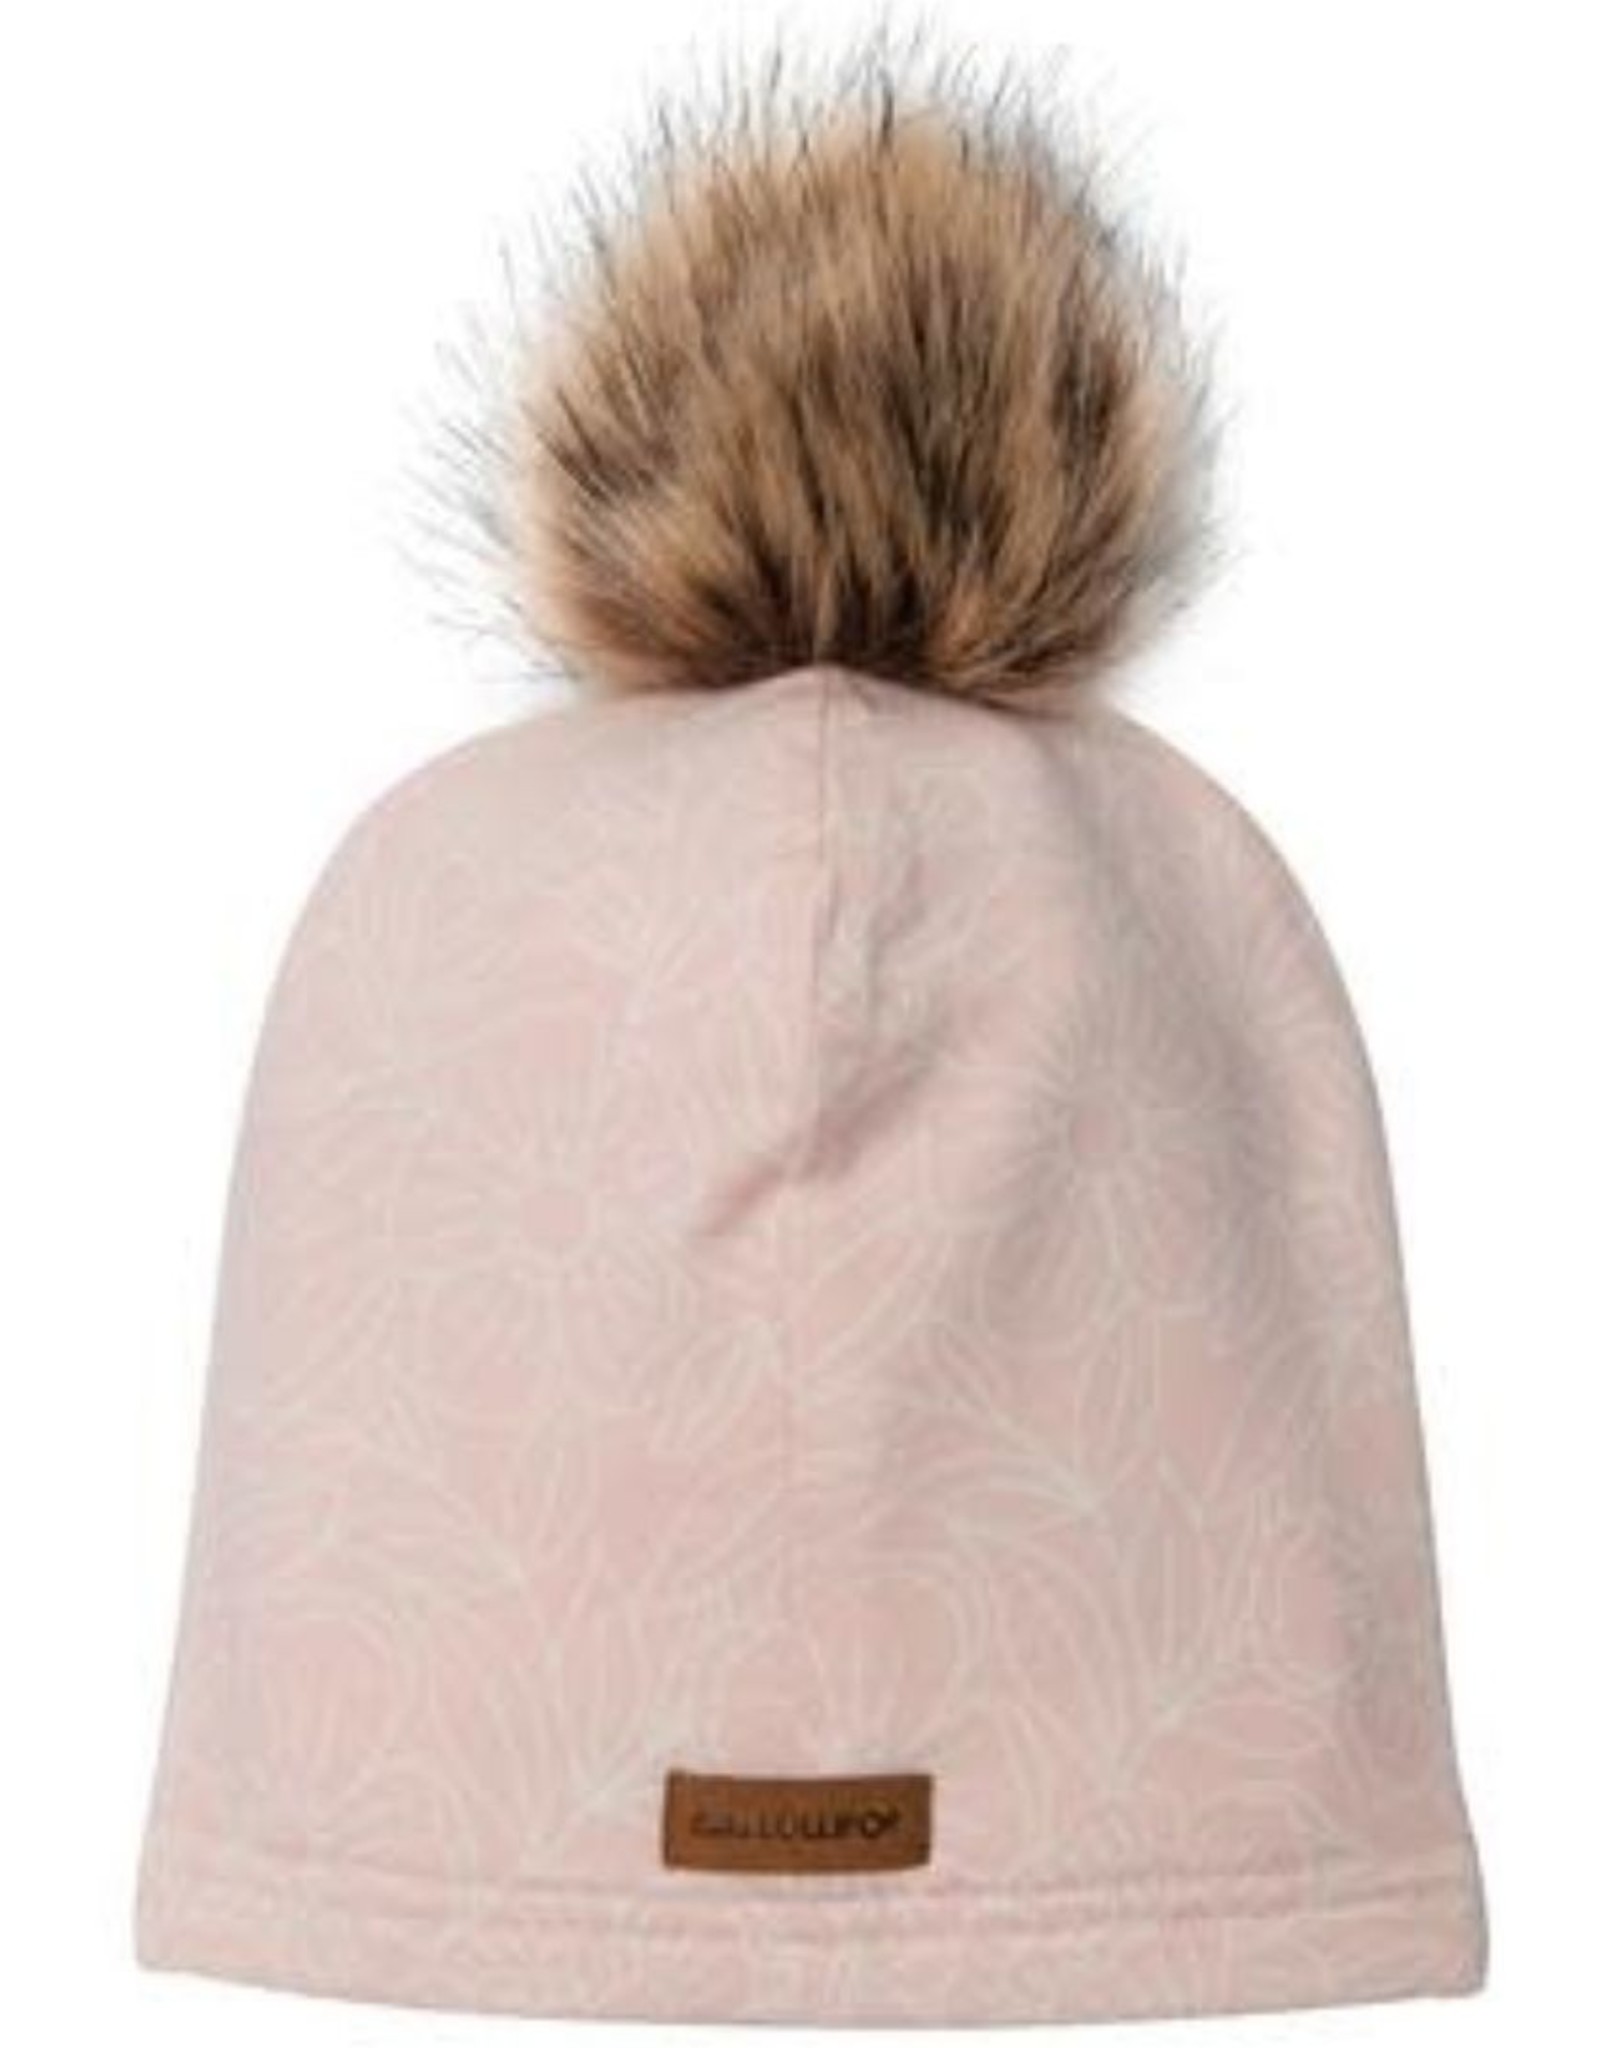 Sepia Rose Kid's Pom Pom Hat in Tencel 2T-5T